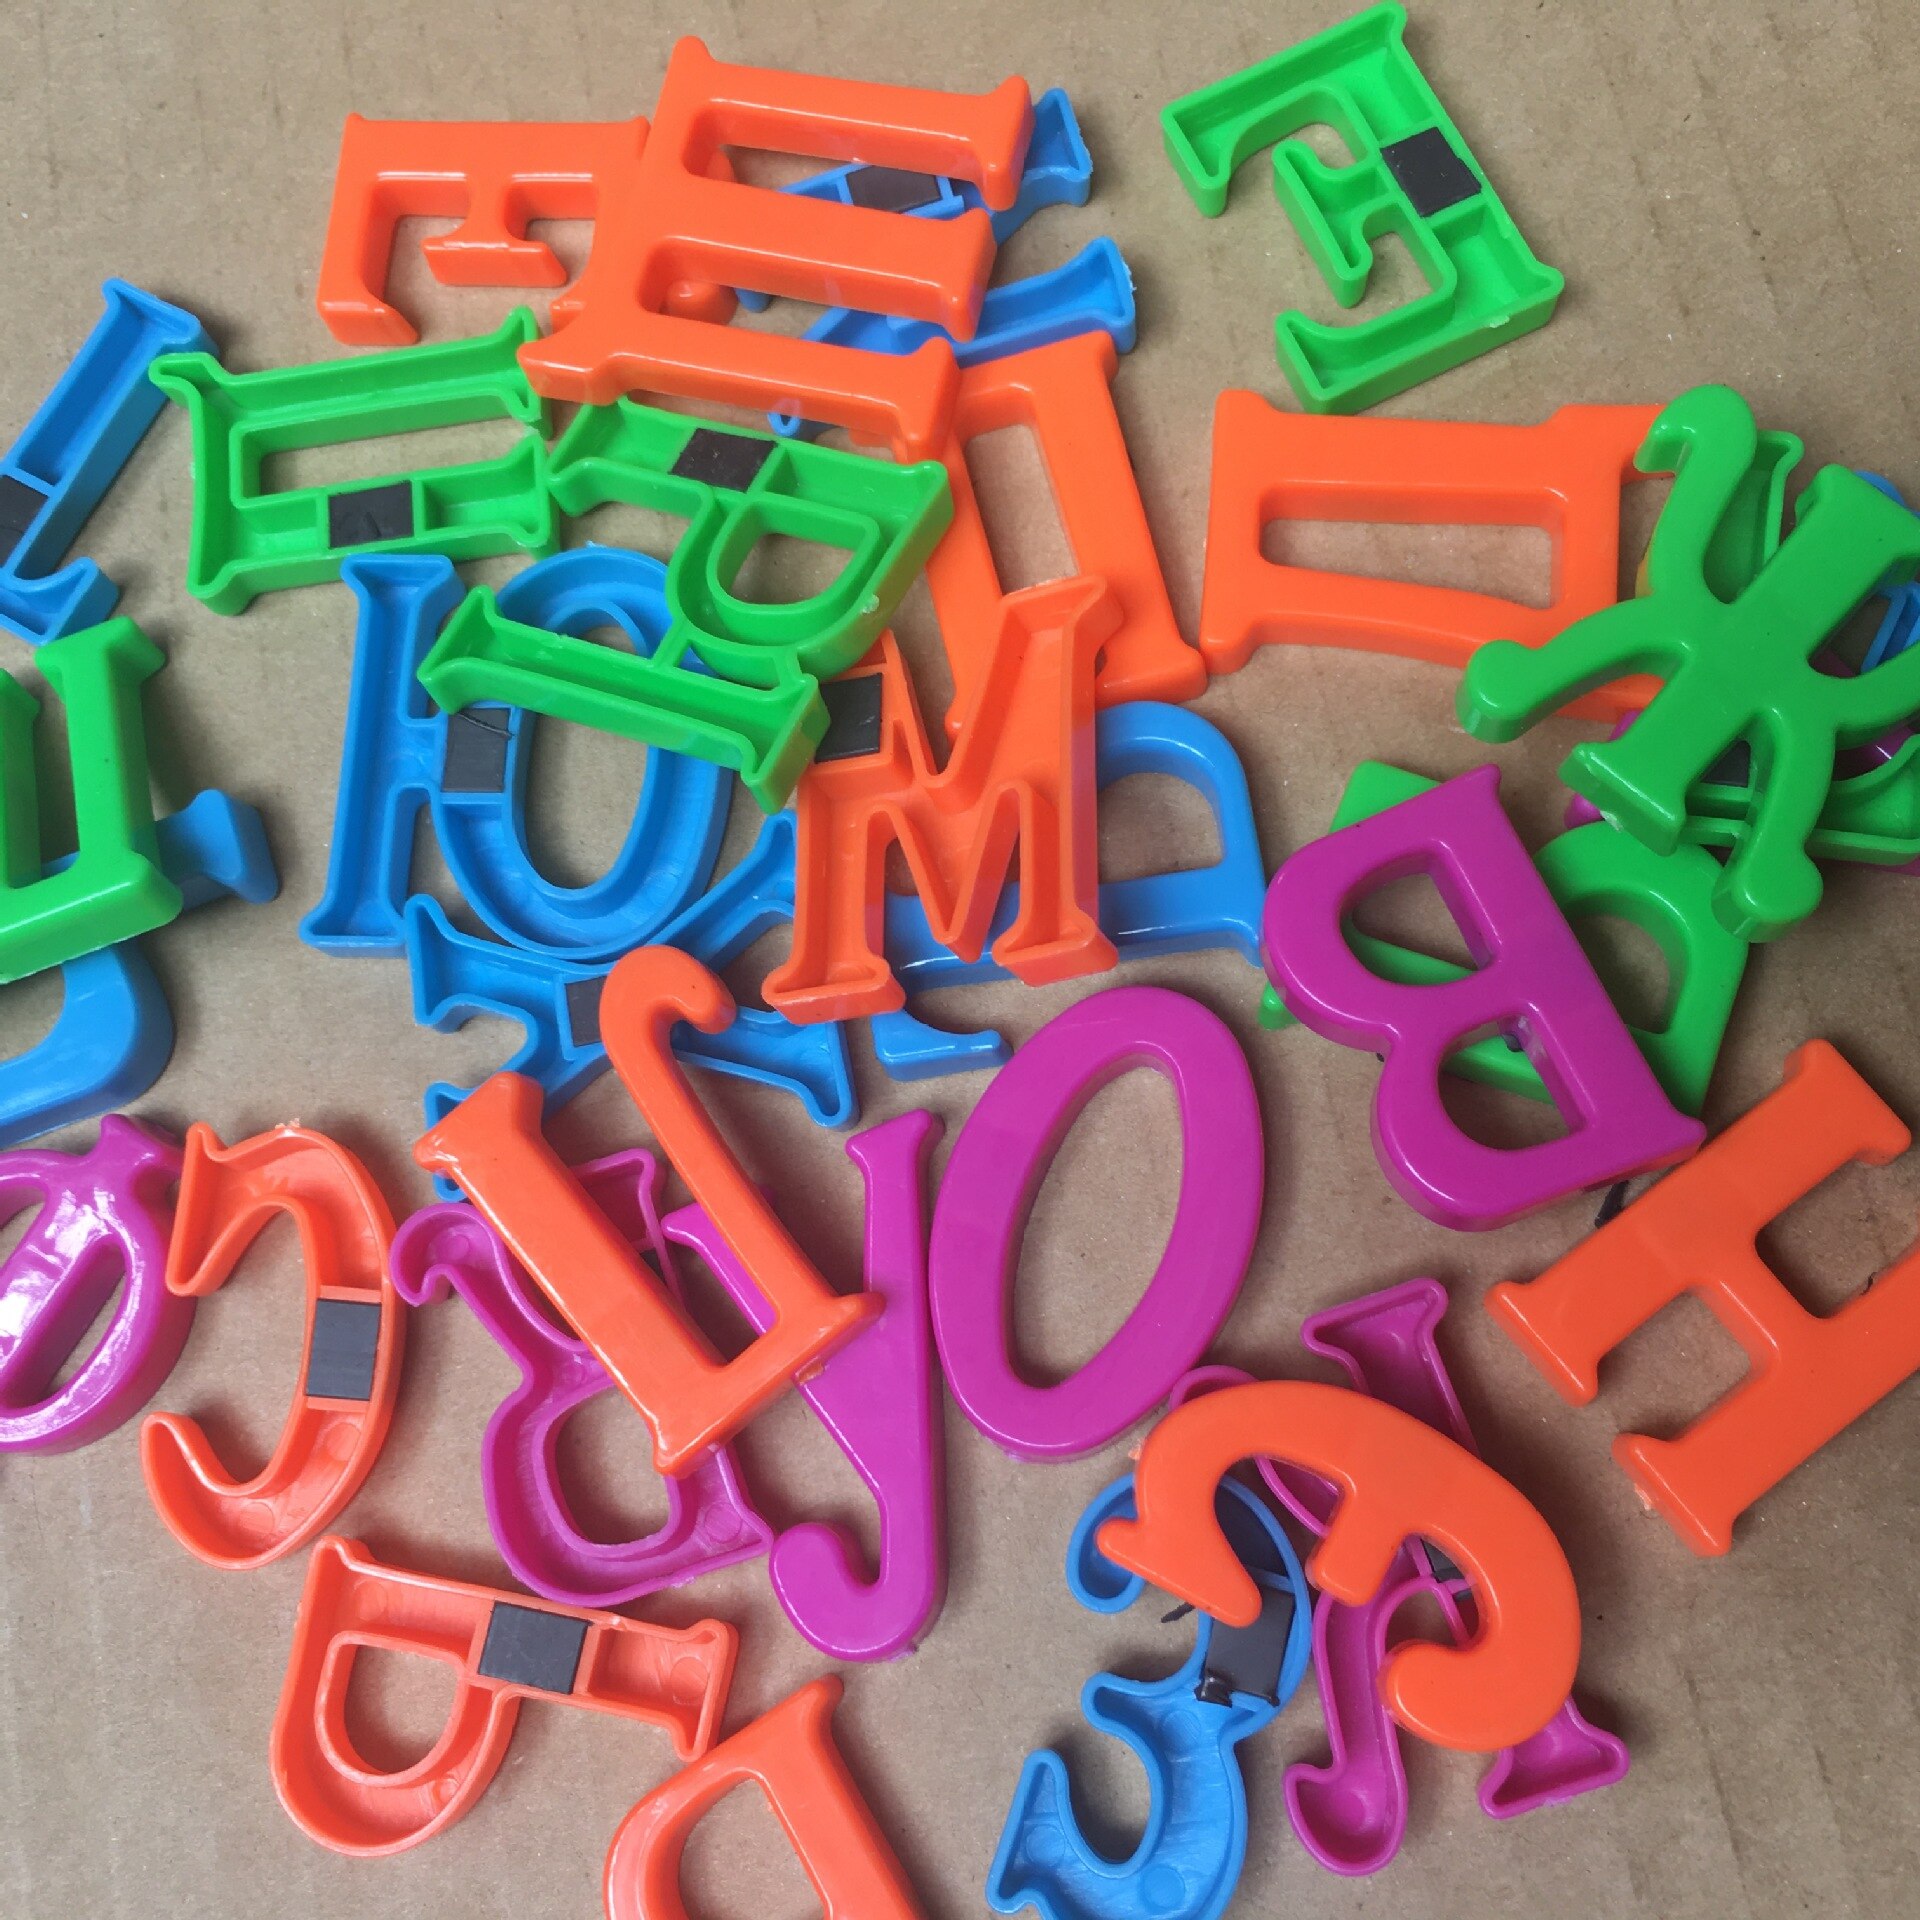 33 stk / sæt magnetiske russiske bogstaver læringsmateriale russisk alfabet brev magnetisk barn pædagogisk legetøj køleskabsmagnet